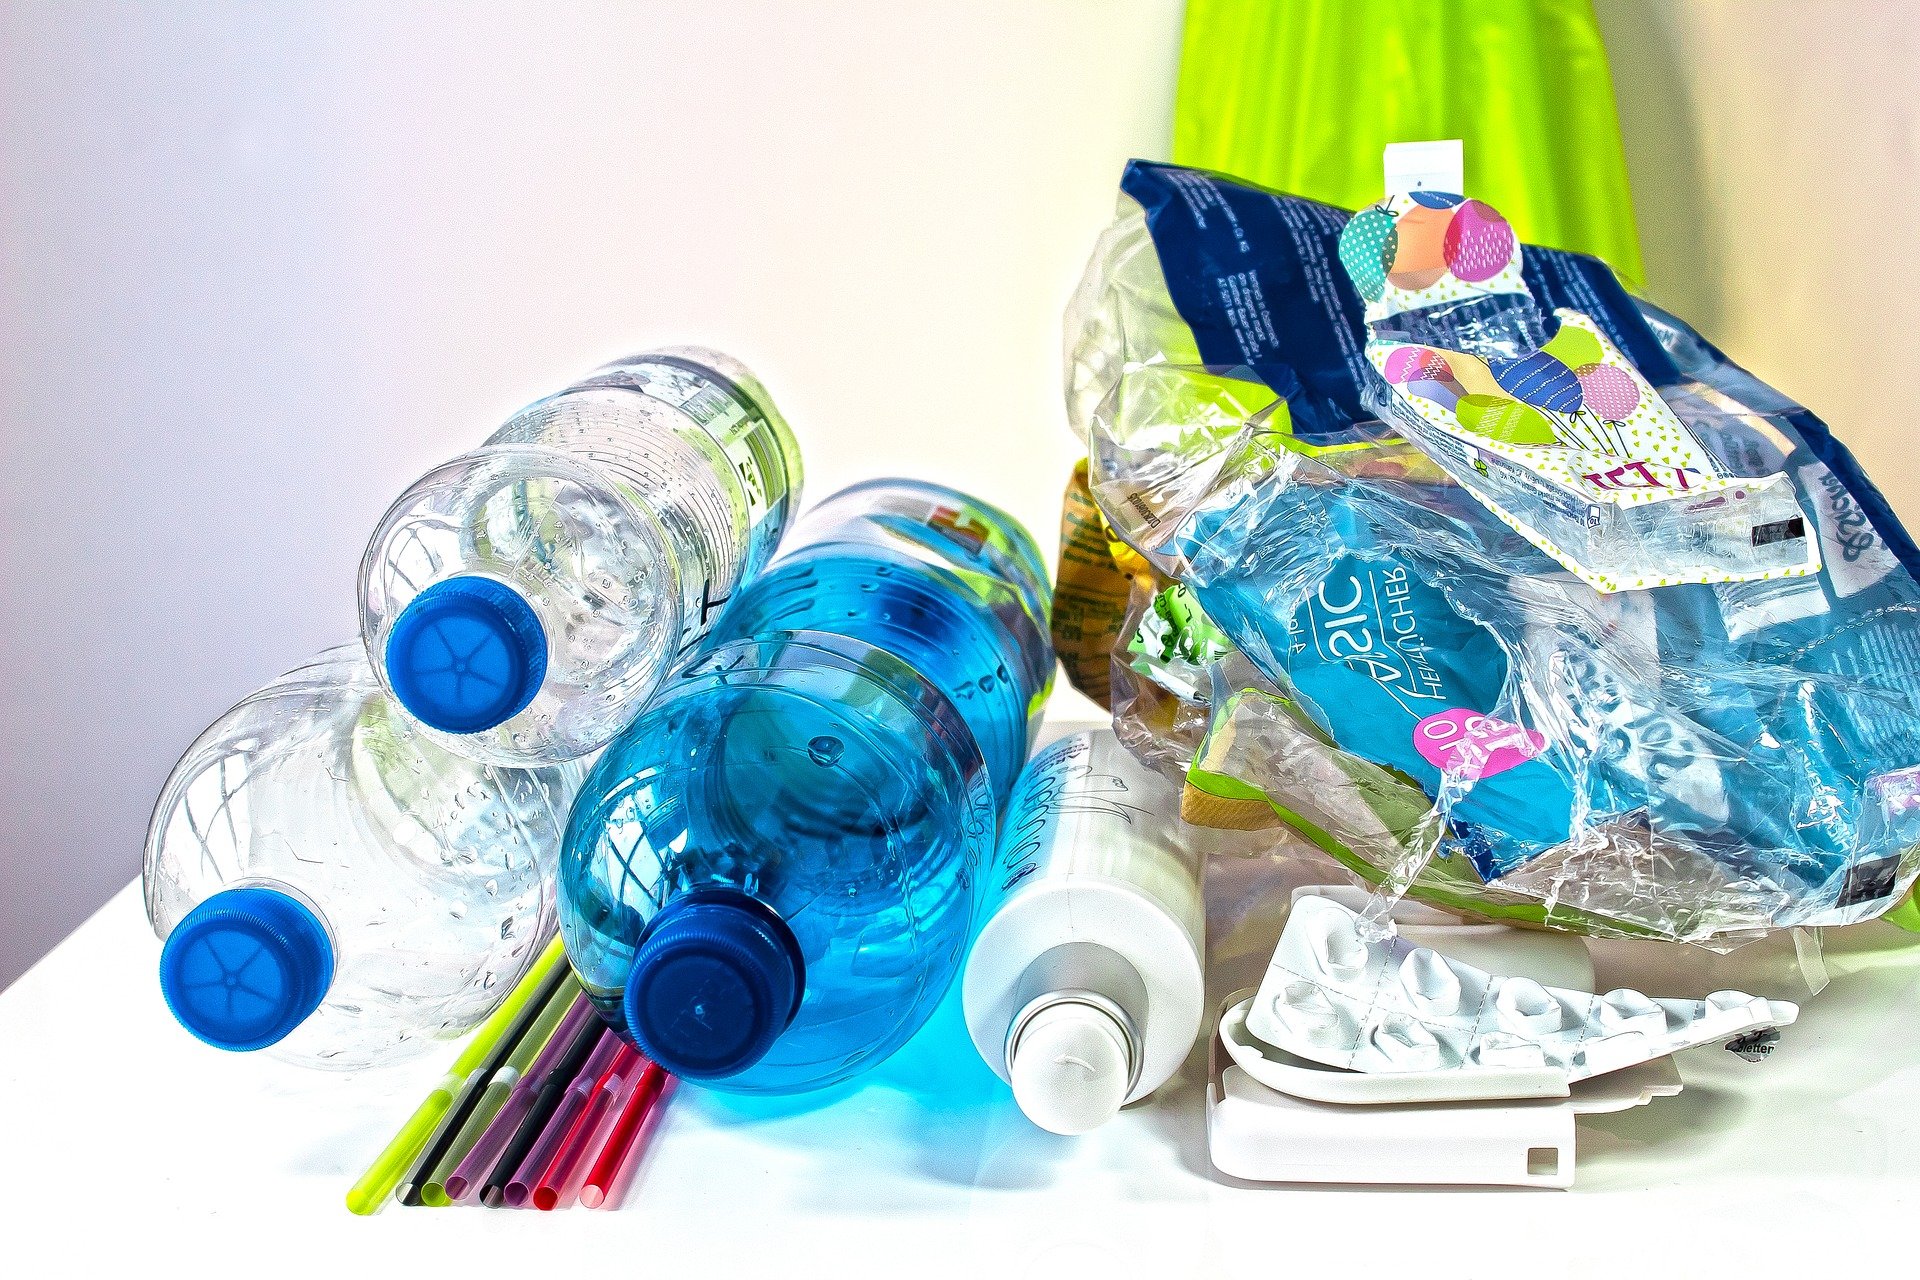 Πλαστικά: Στα… σκουπίδια 127 εκατ. ευρώ τον χρόνο